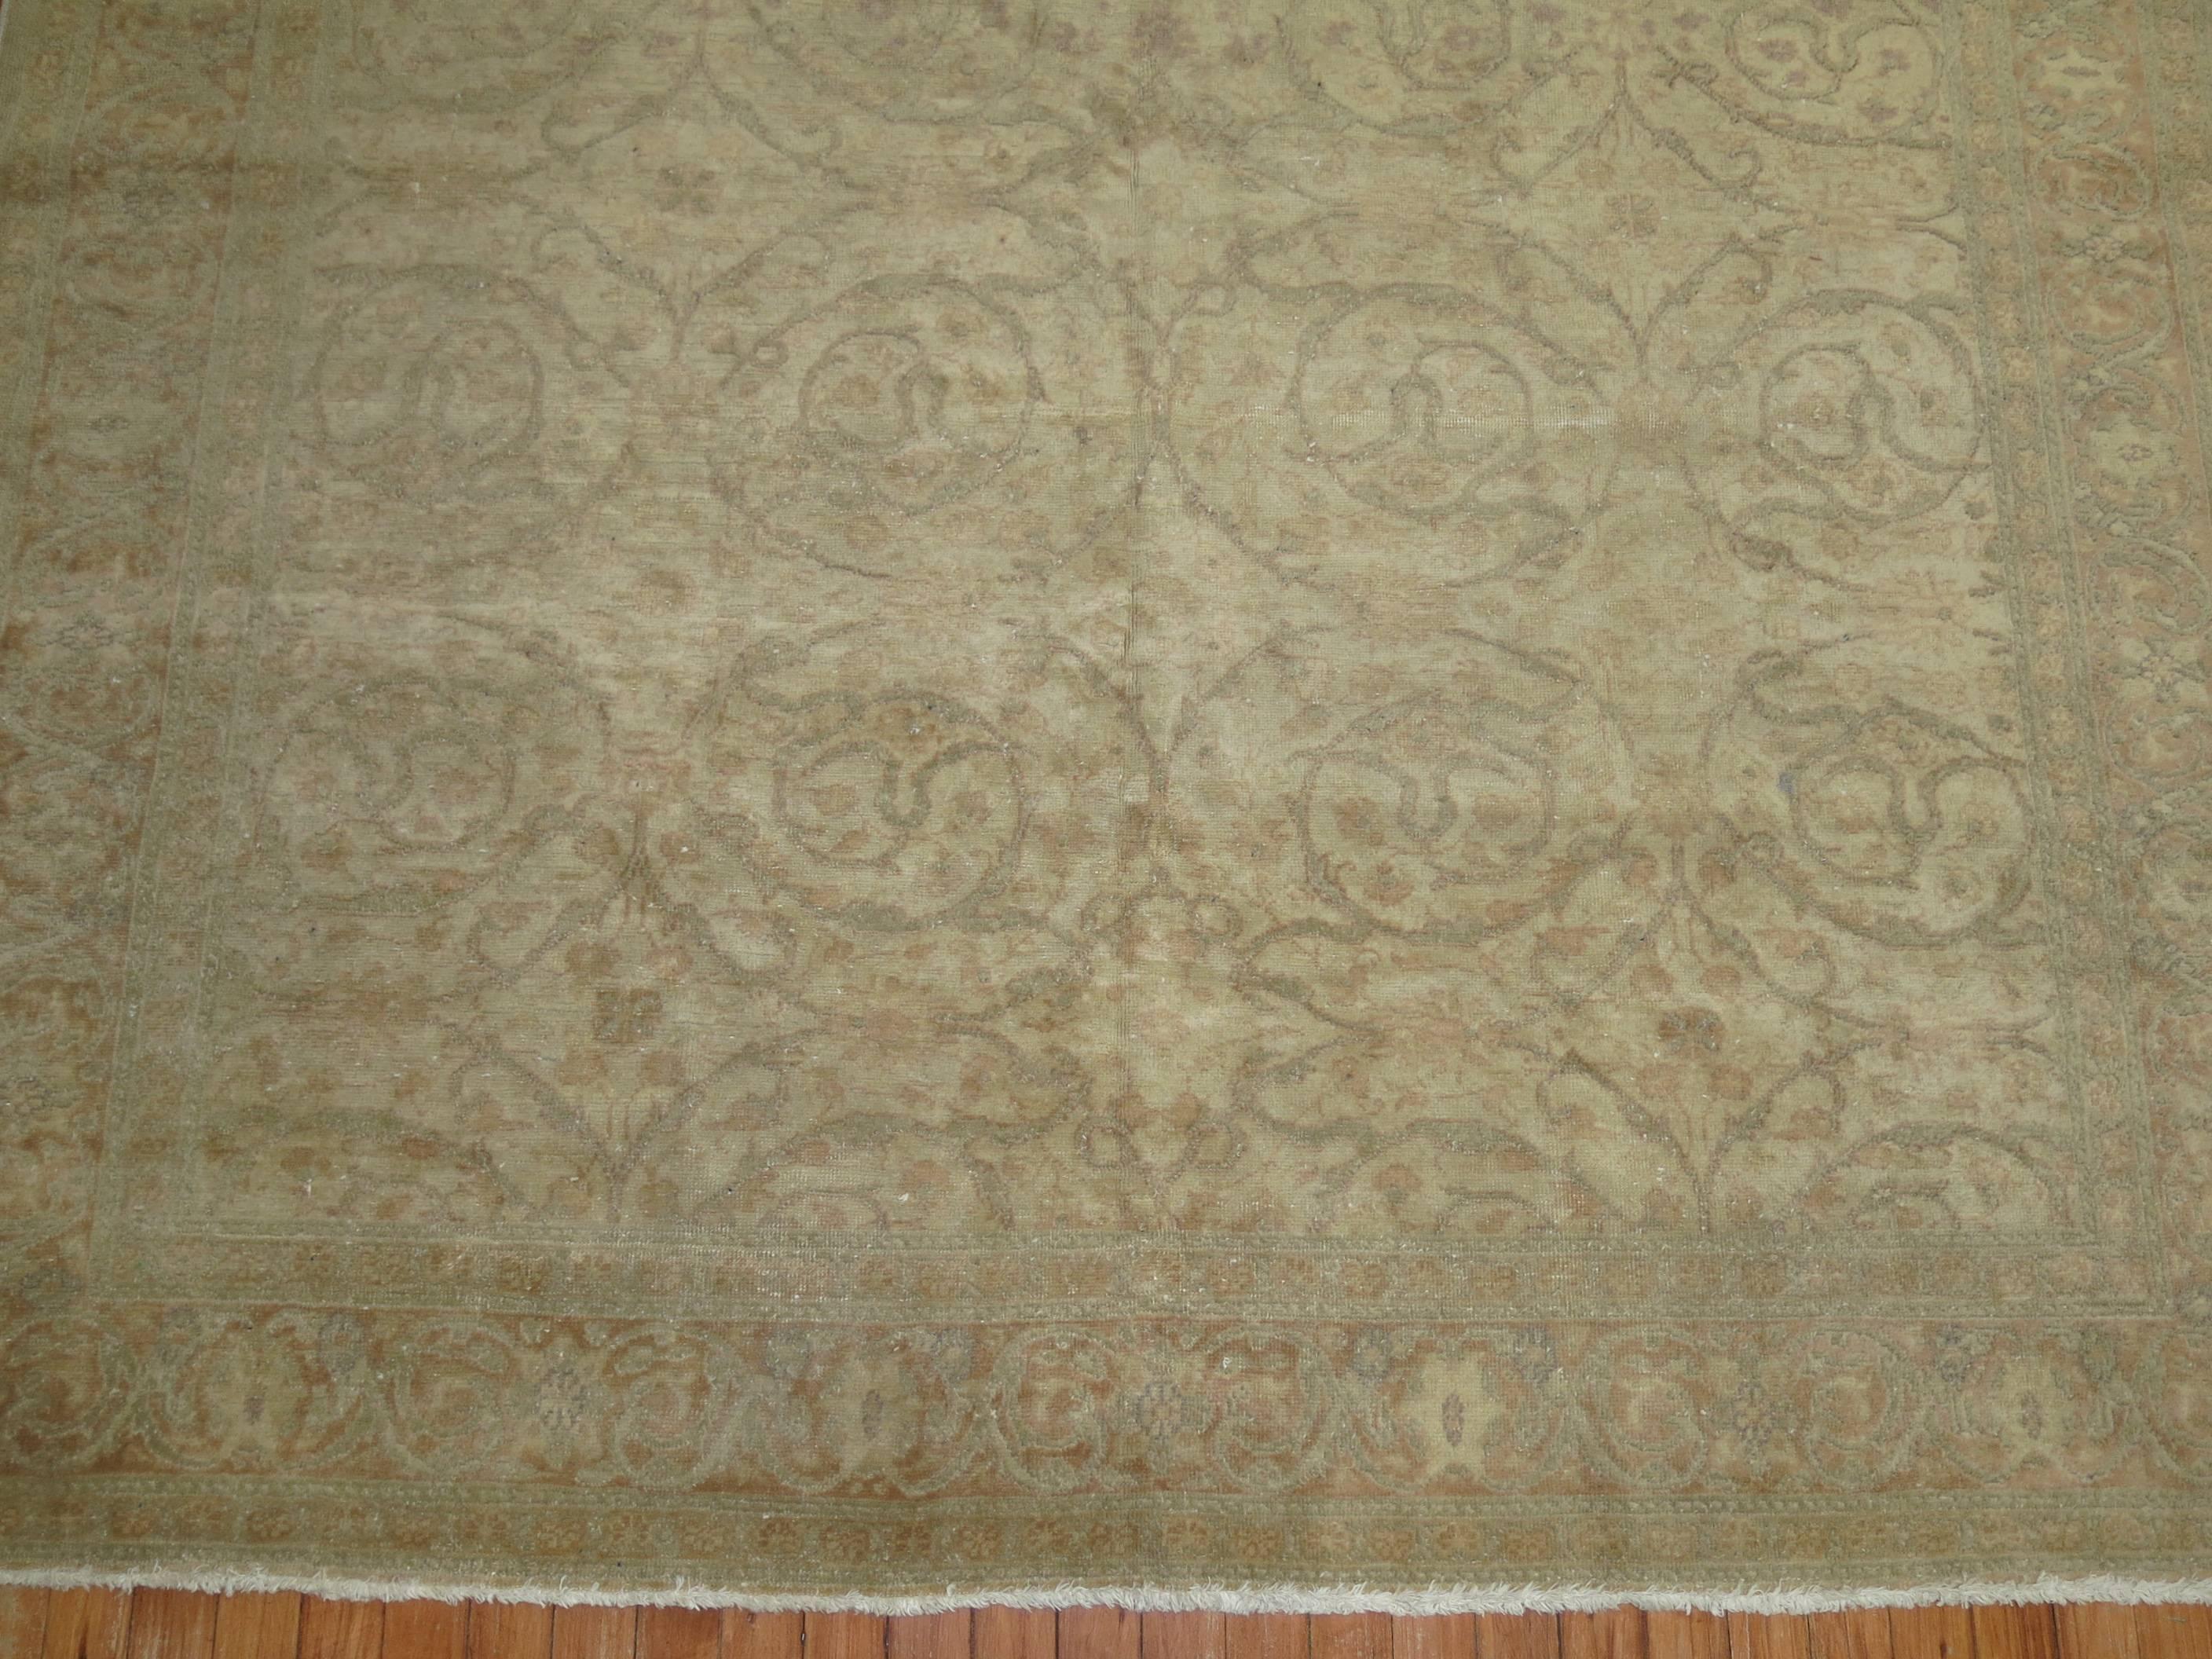 Ein türkischer Sivas-Teppich mittlerer Größe in gedämpften, neutralen Tönen.

6'5'' x 9'5''